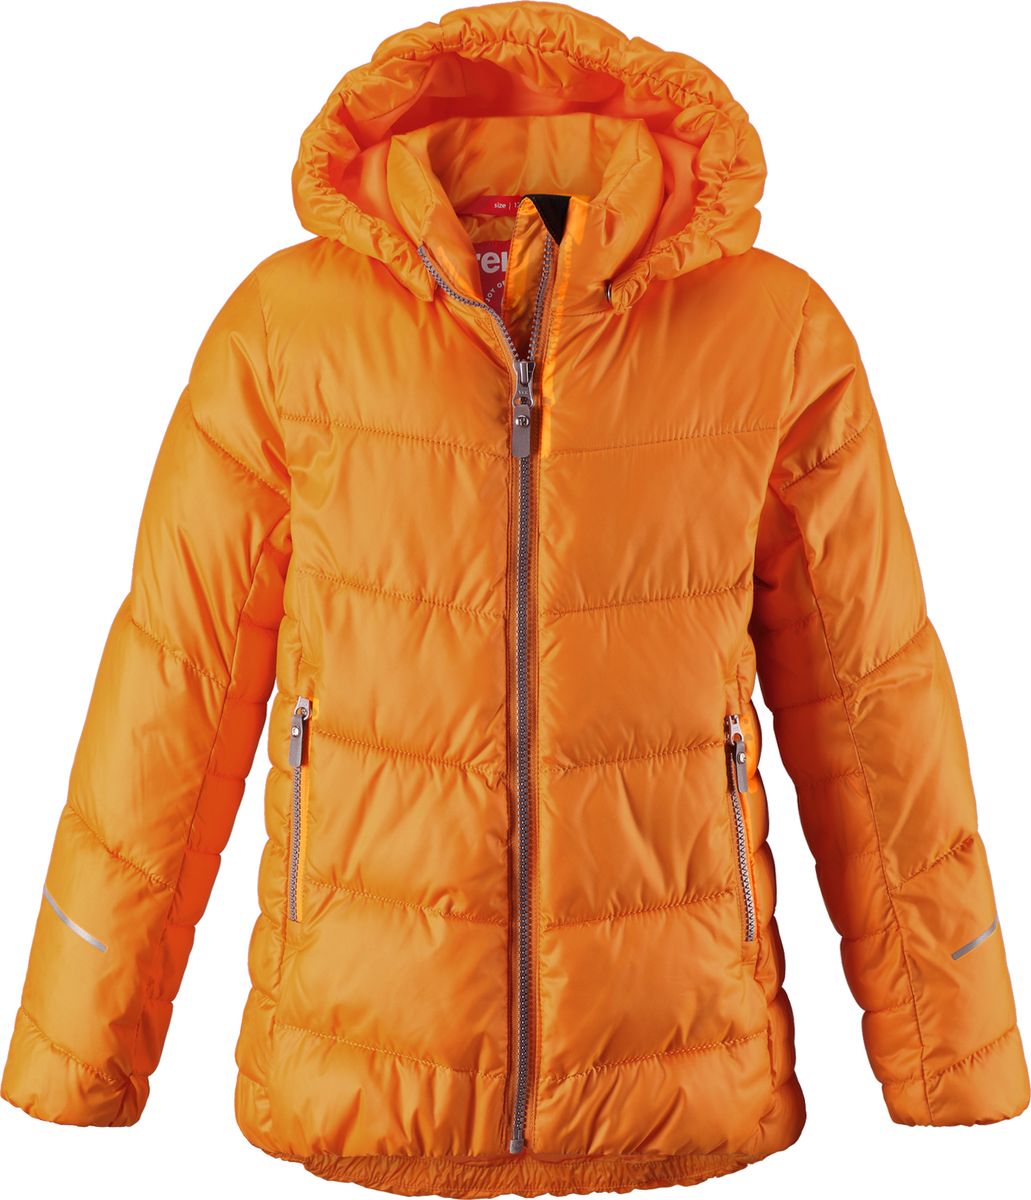 Куртка для девочки Reima Malla, цвет: оранжевый. 5313442440. Размер 134